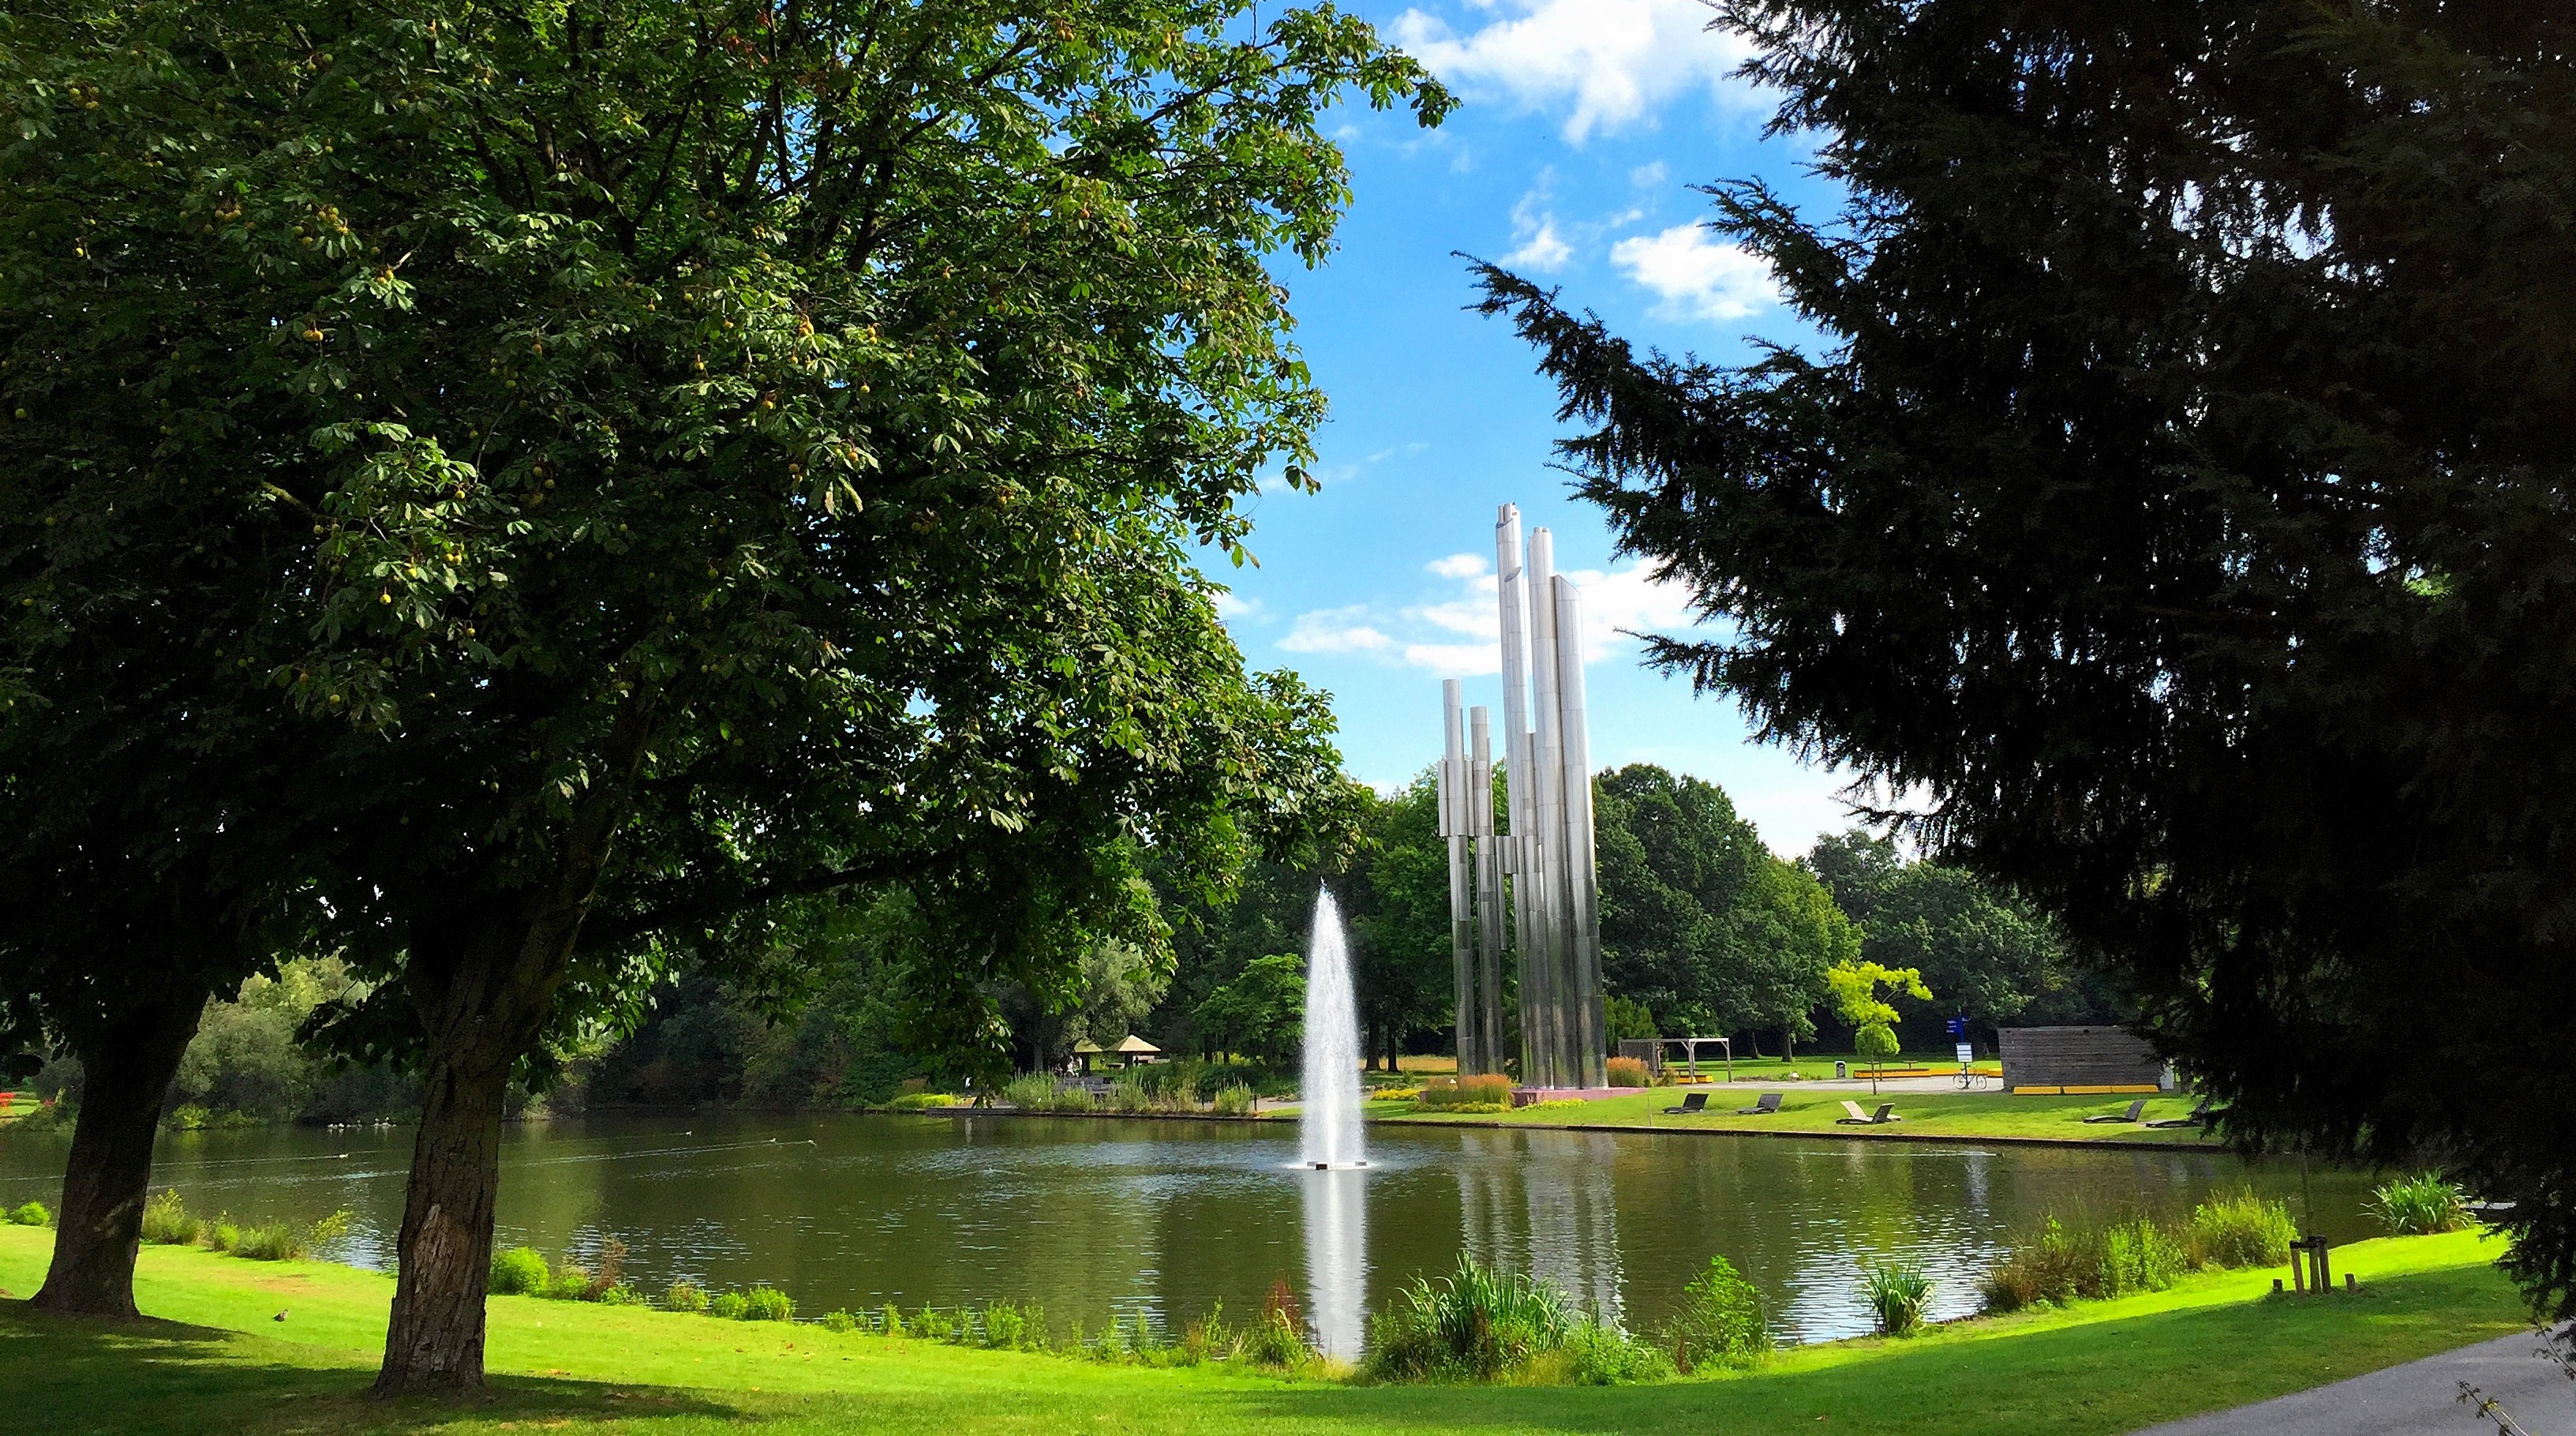 Park-Eindhoven-Henri-Dunant-hotspot-parks